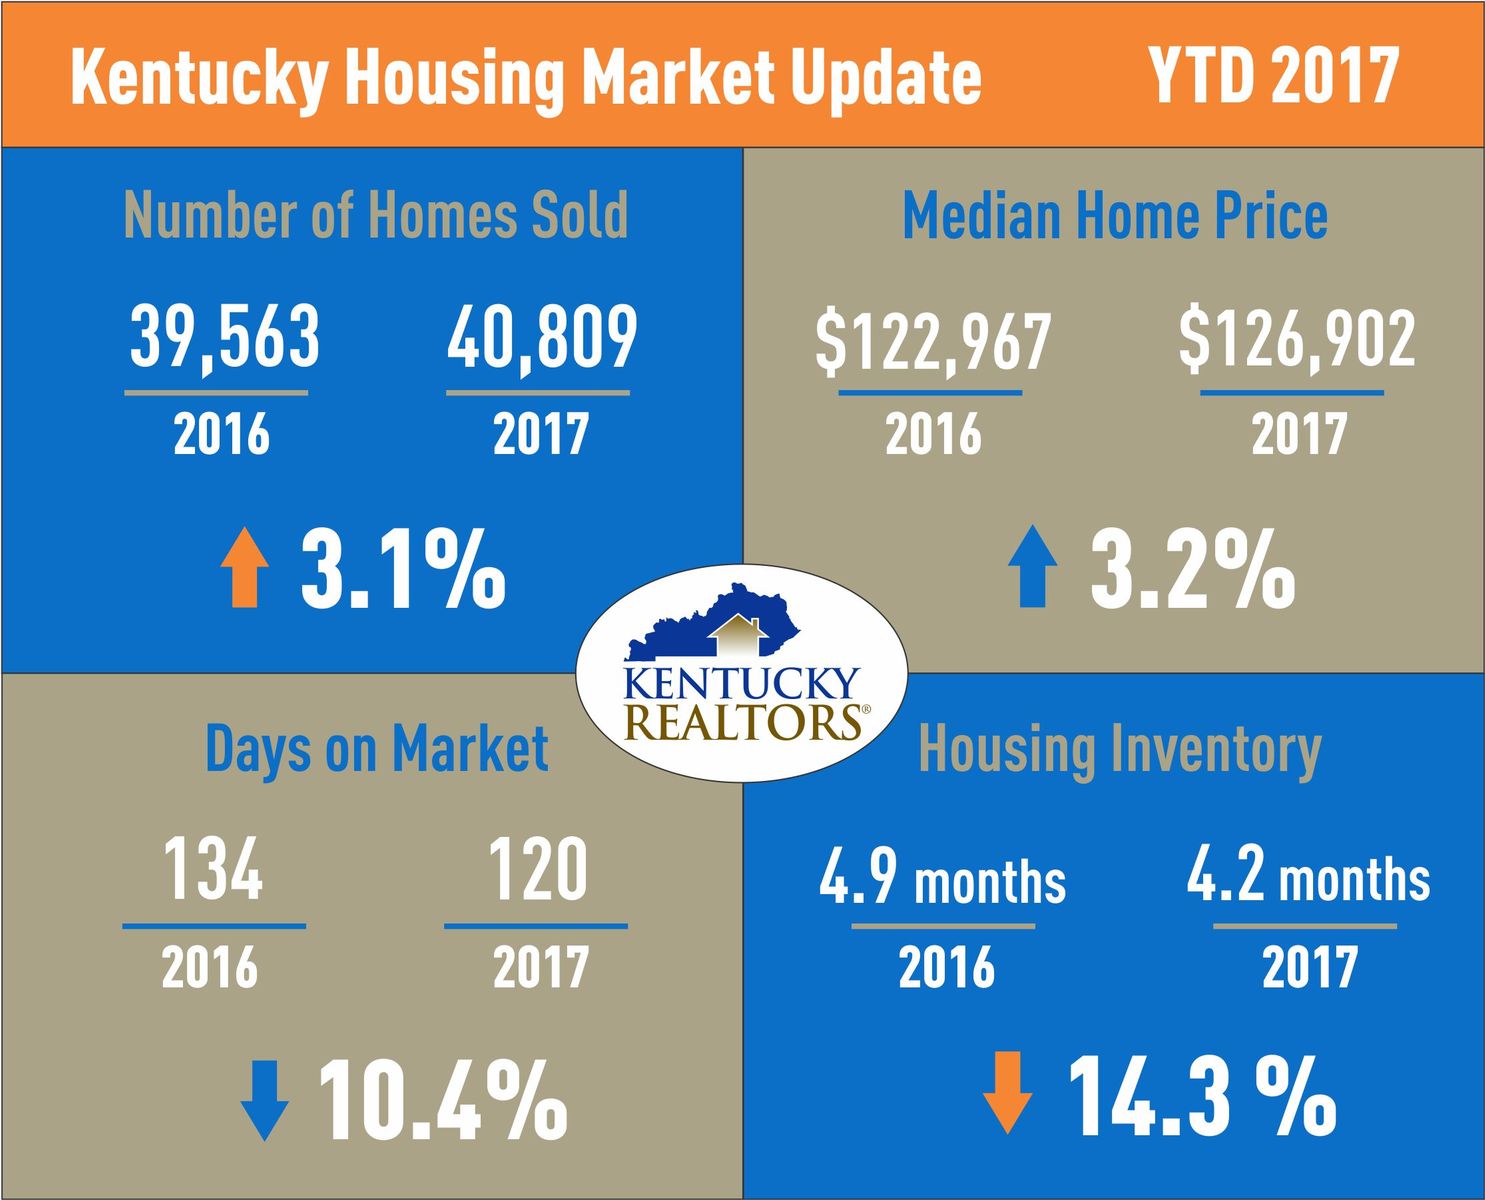 Kentucky Housing Market Update September 2017